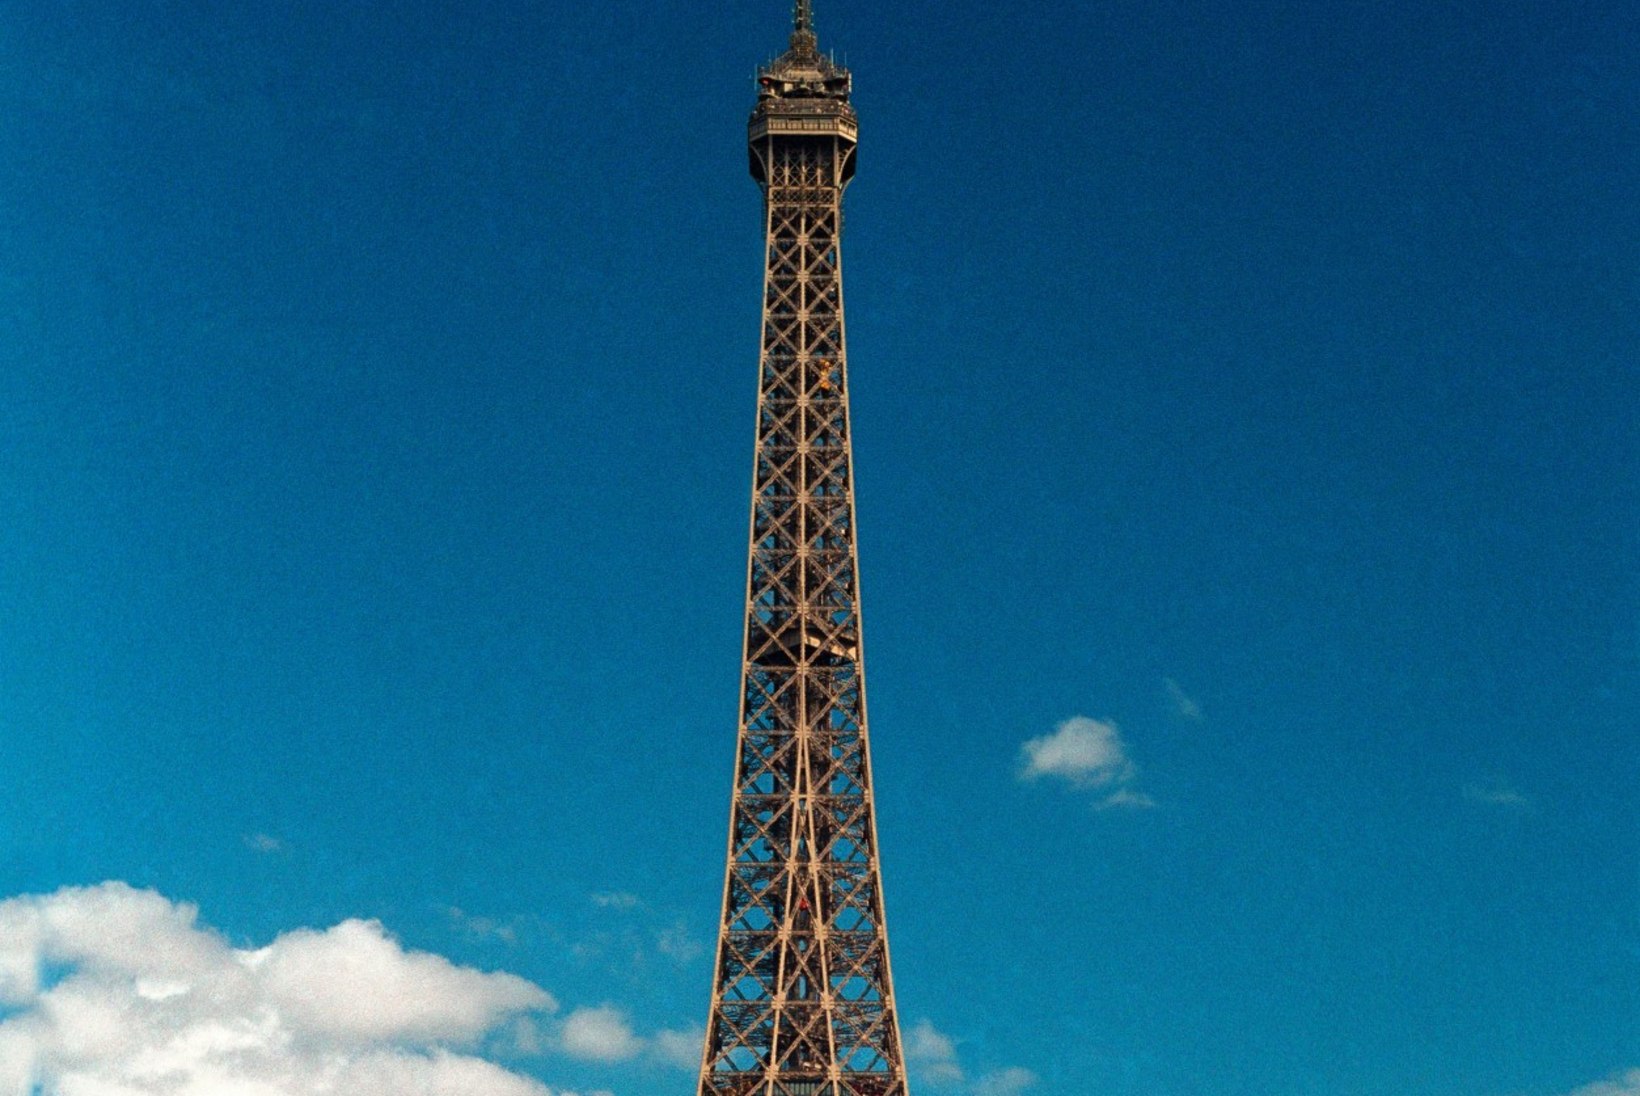 Mitmed kultuuritegelased olid 132 aastat tagasi avatud Eiffeli torni püstitamise vastu